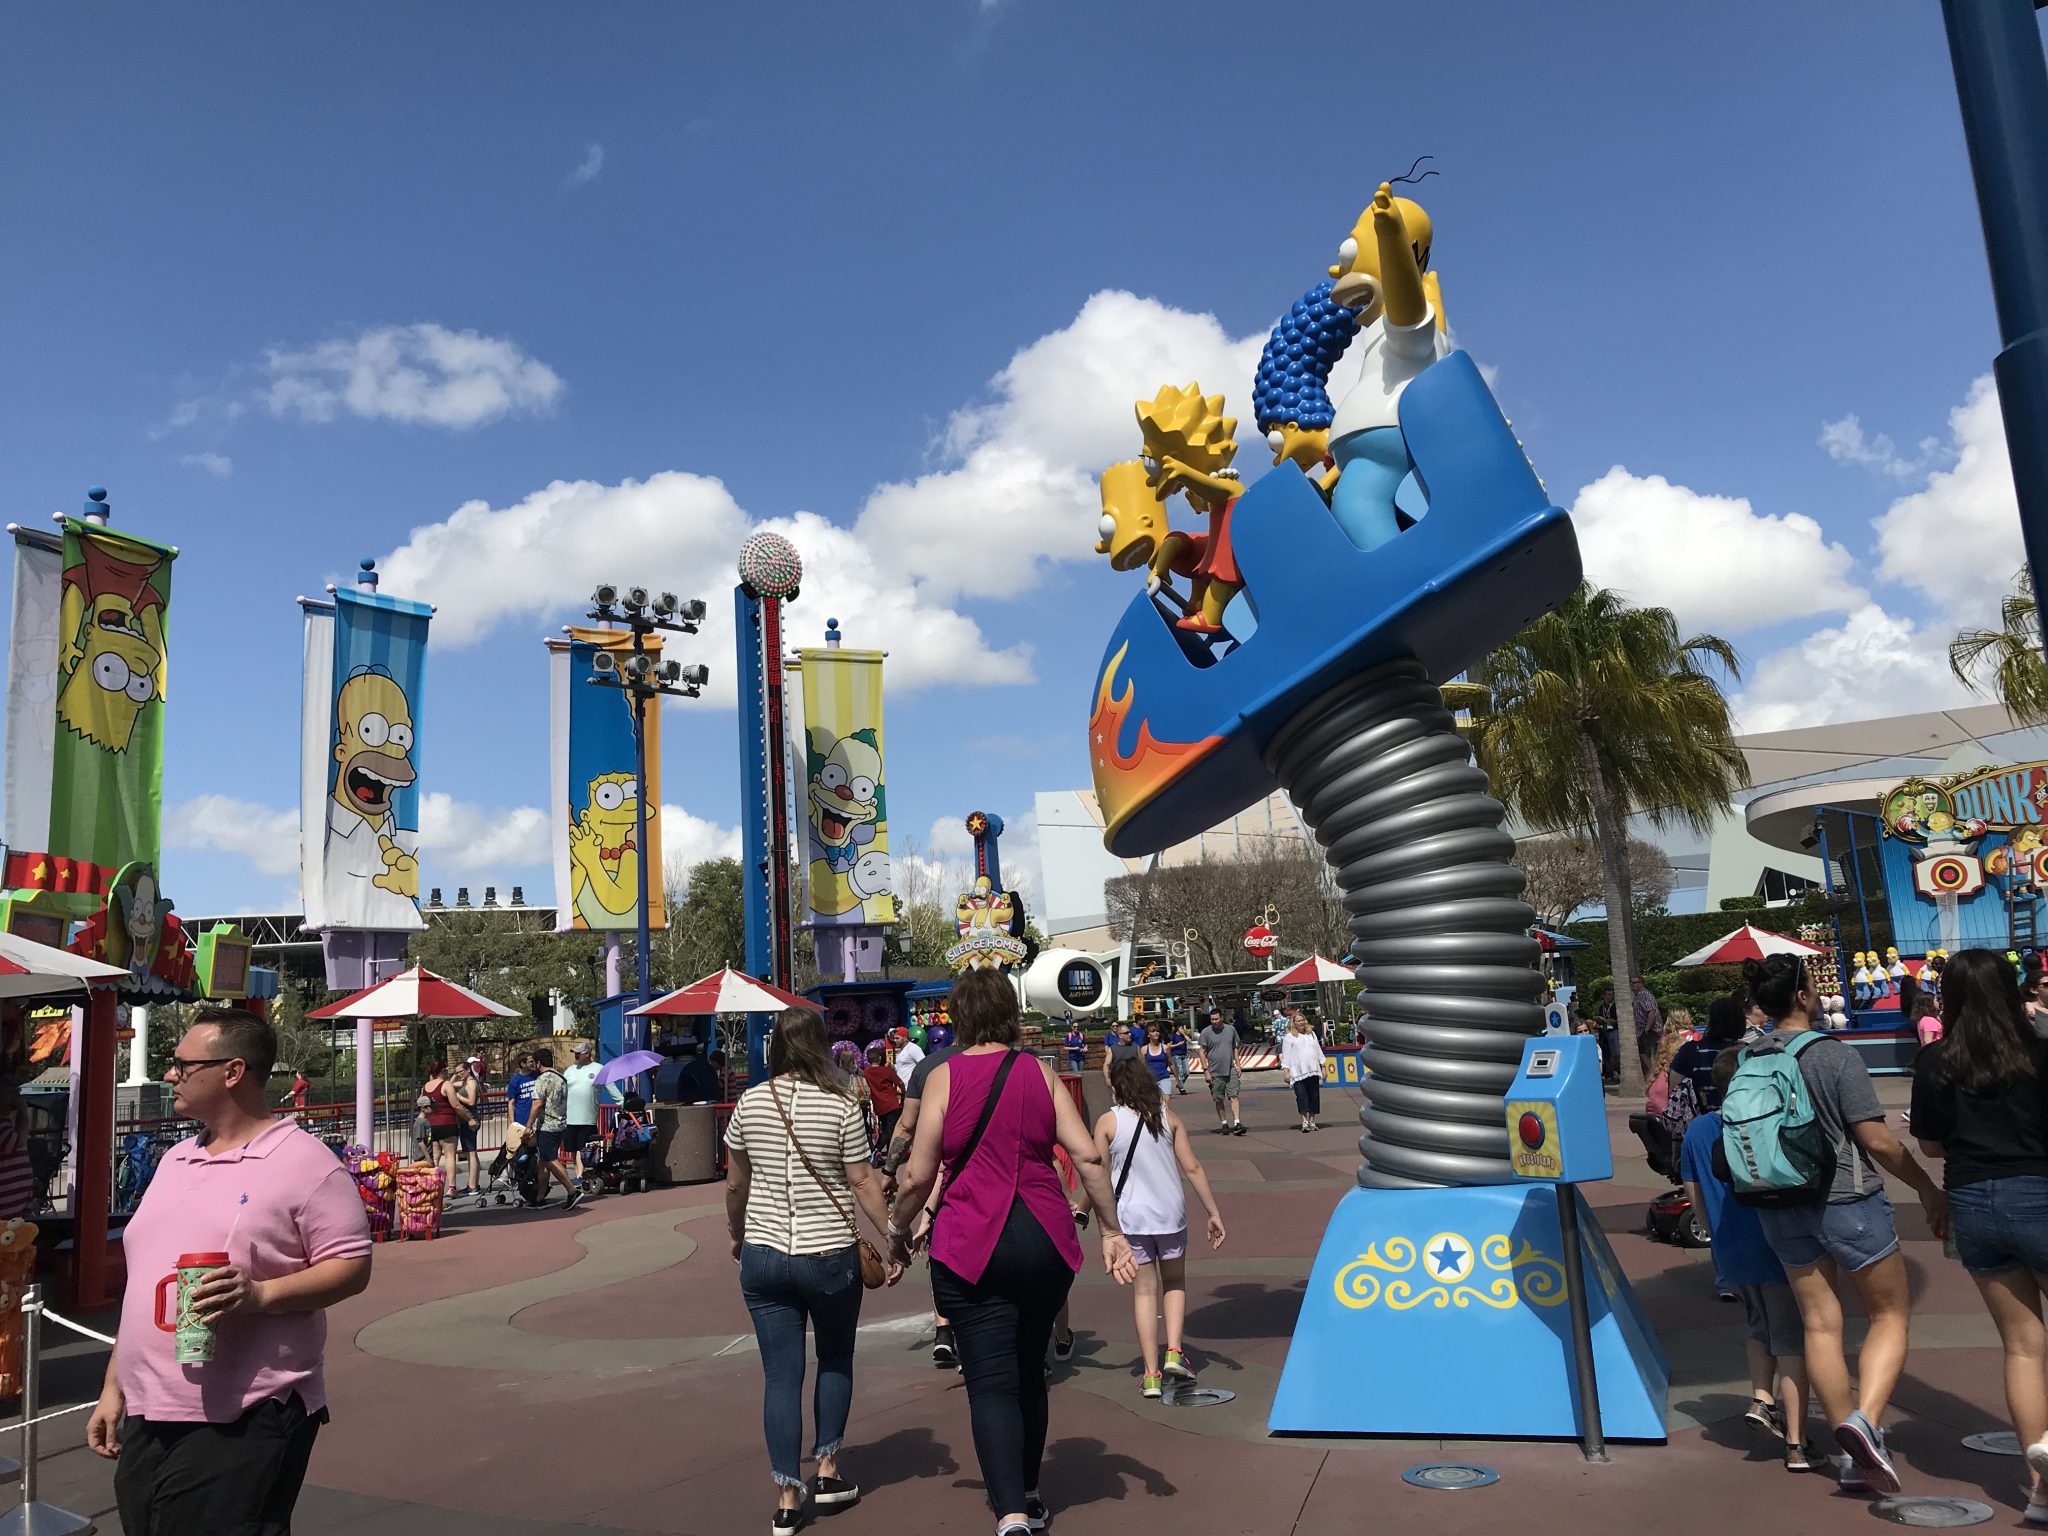 Springfield em Orlando, área destinada totalmente aos Simpsons. Foto: Divulgação/Fernanda De Rosa